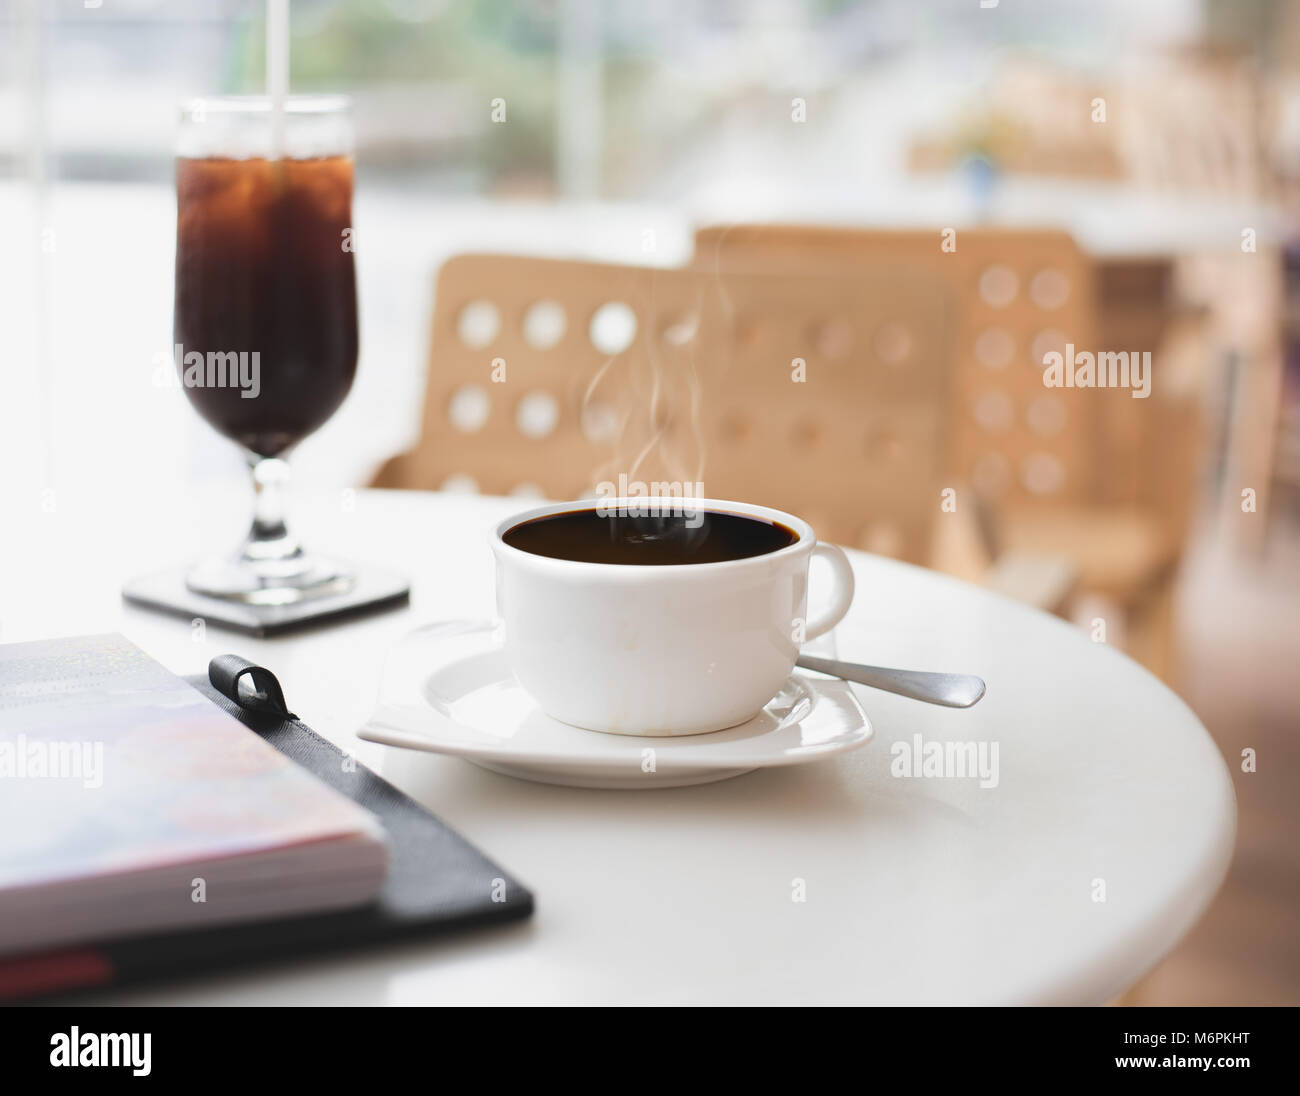 Tasse à café noir chaud sur table tout en blanc a toujours un vide à vapeur café/restaurant. Concept de la solitude, l'isolement, l'abandon ou solitaires. Banque D'Images